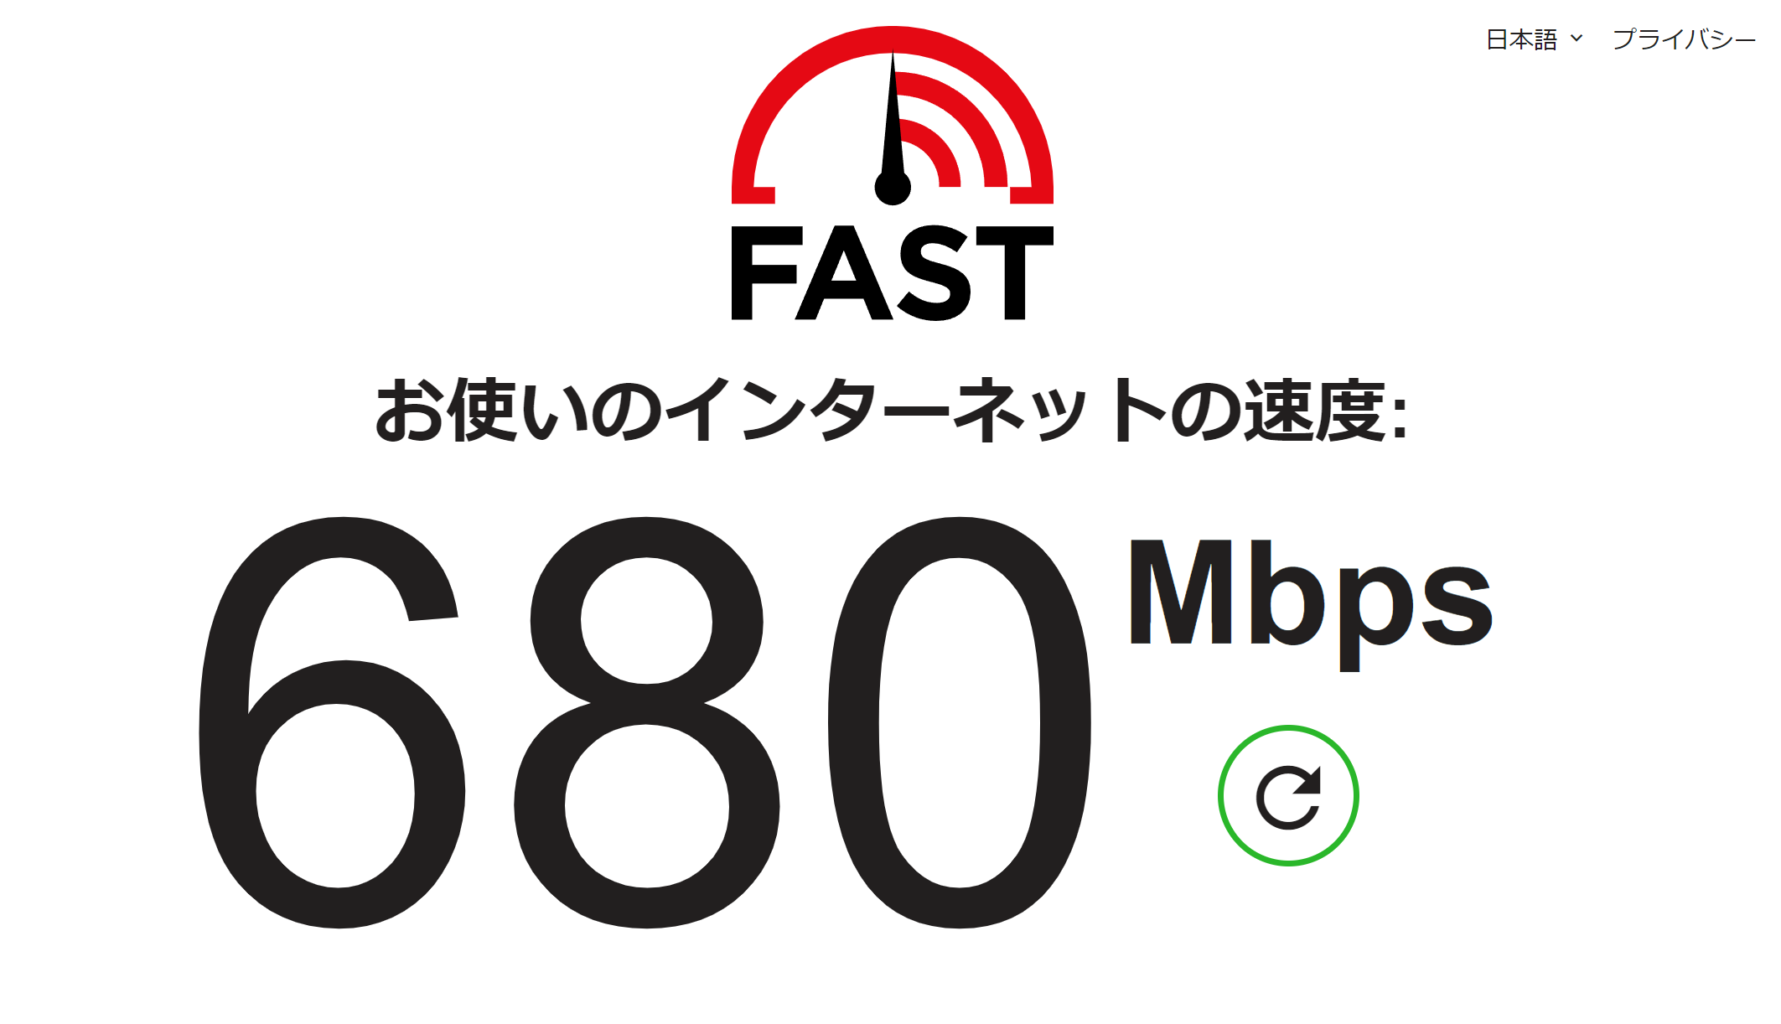 館山市の学習塾ランゲージ・ラボラトリーの無料の高速wifi